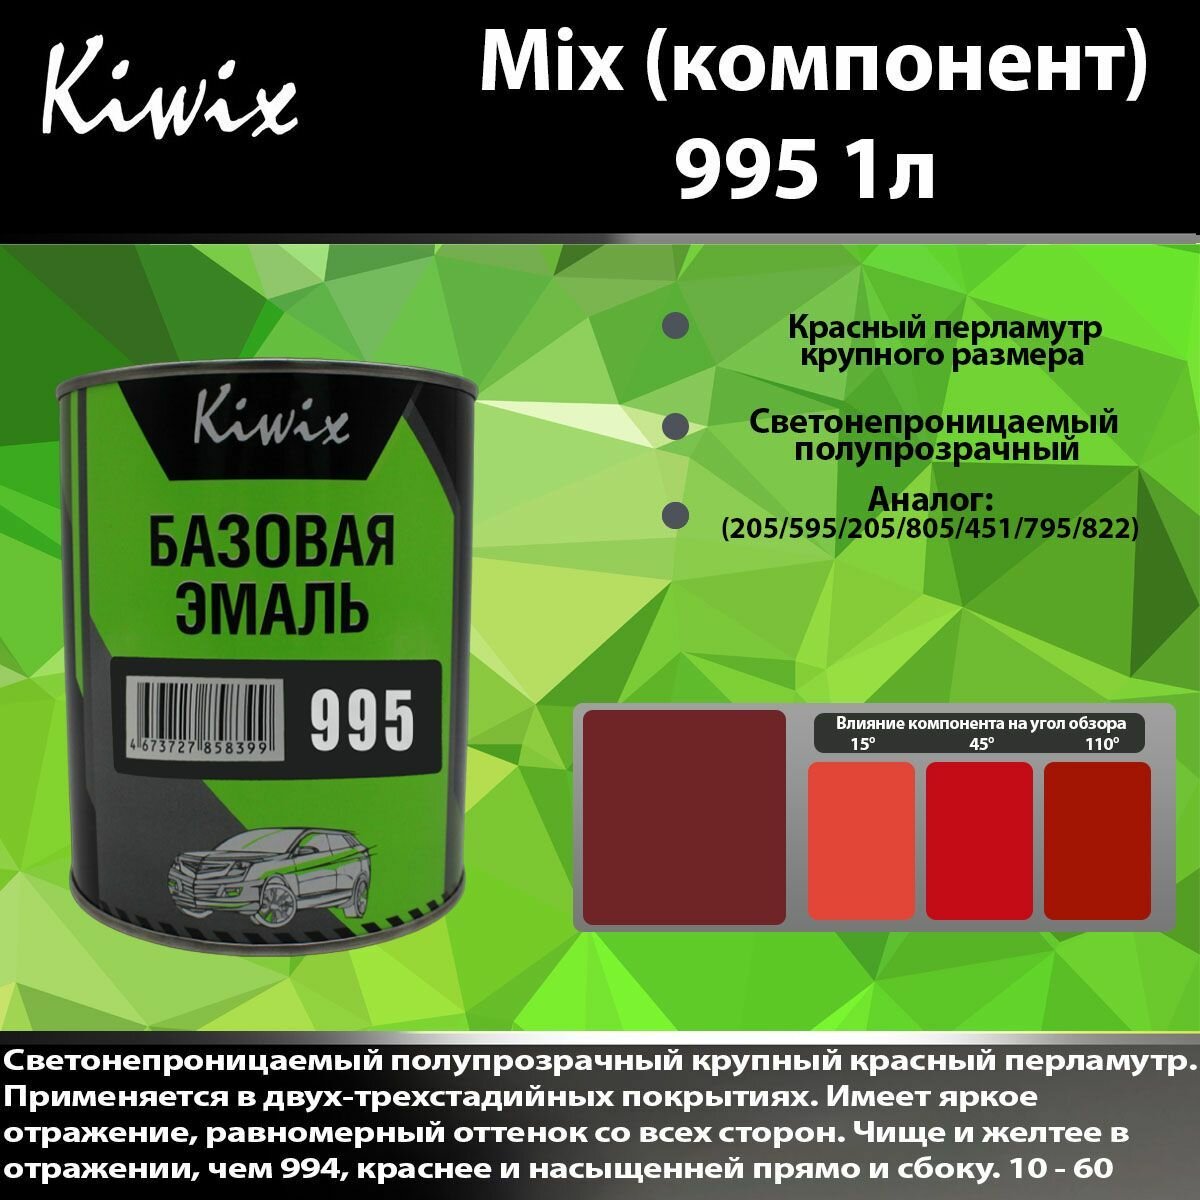 KIWIX MIX 995 1л. Компонент микс. Перламутр